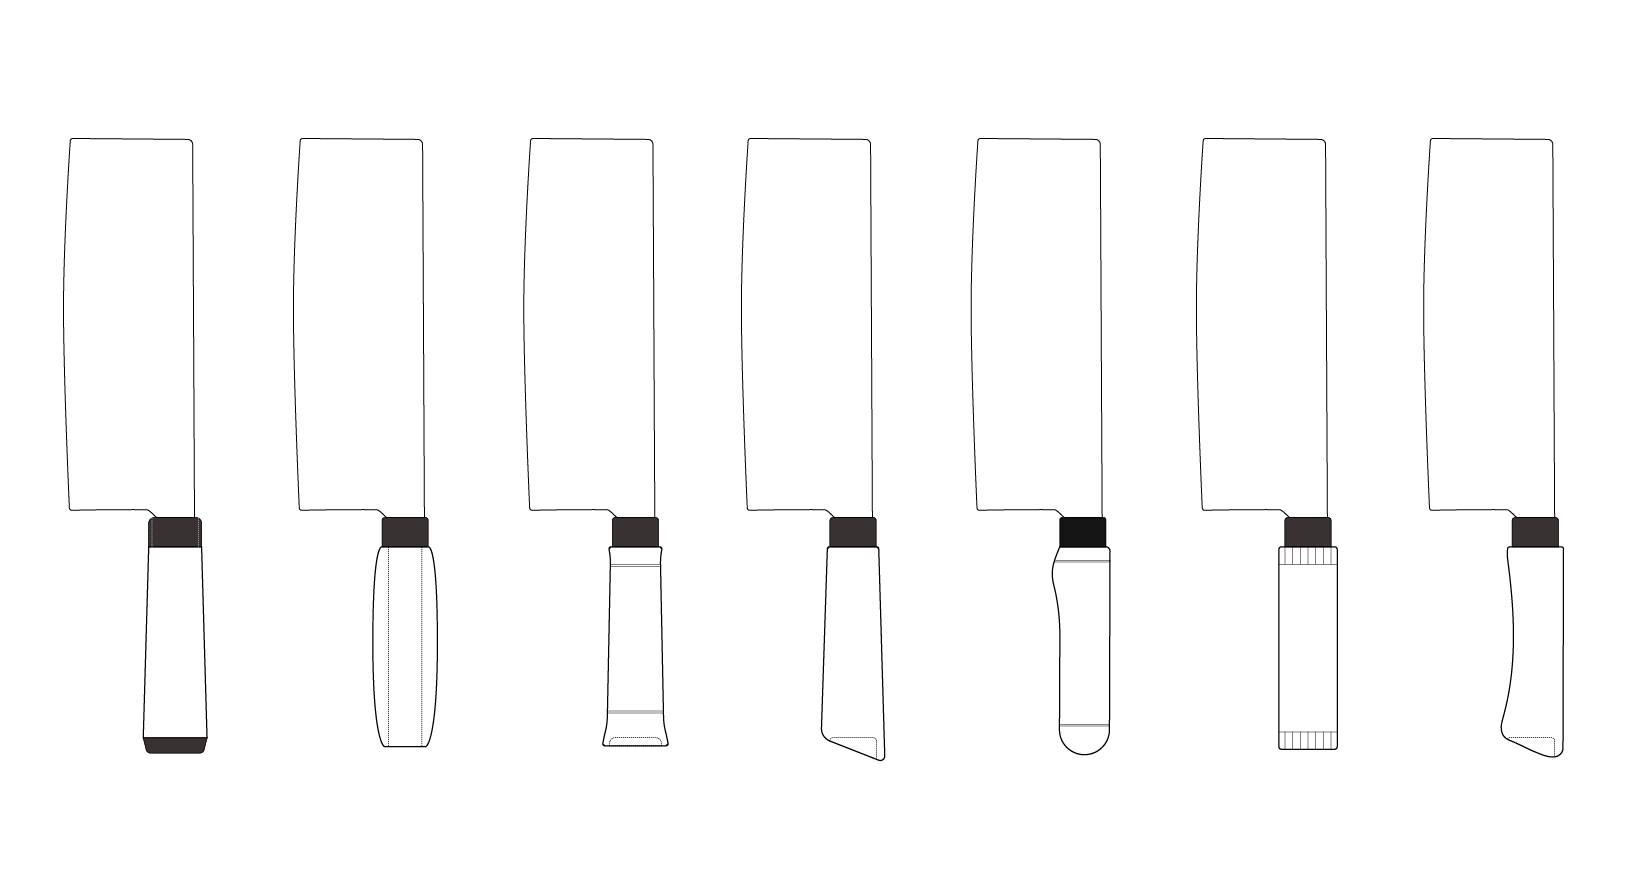 萬發鐵店 保留萬發打鐵鋪經典的刀面造型，重新設計刀把部分，以簡潔造型為主，為經典和現代造型並存。  發想時先畫了多種造型的握把，再進行實際使用的方式逐一淘汰不適合的，選出最好使用的刀把。 | 甘樂文創 | 甘之如飴，樂在其中